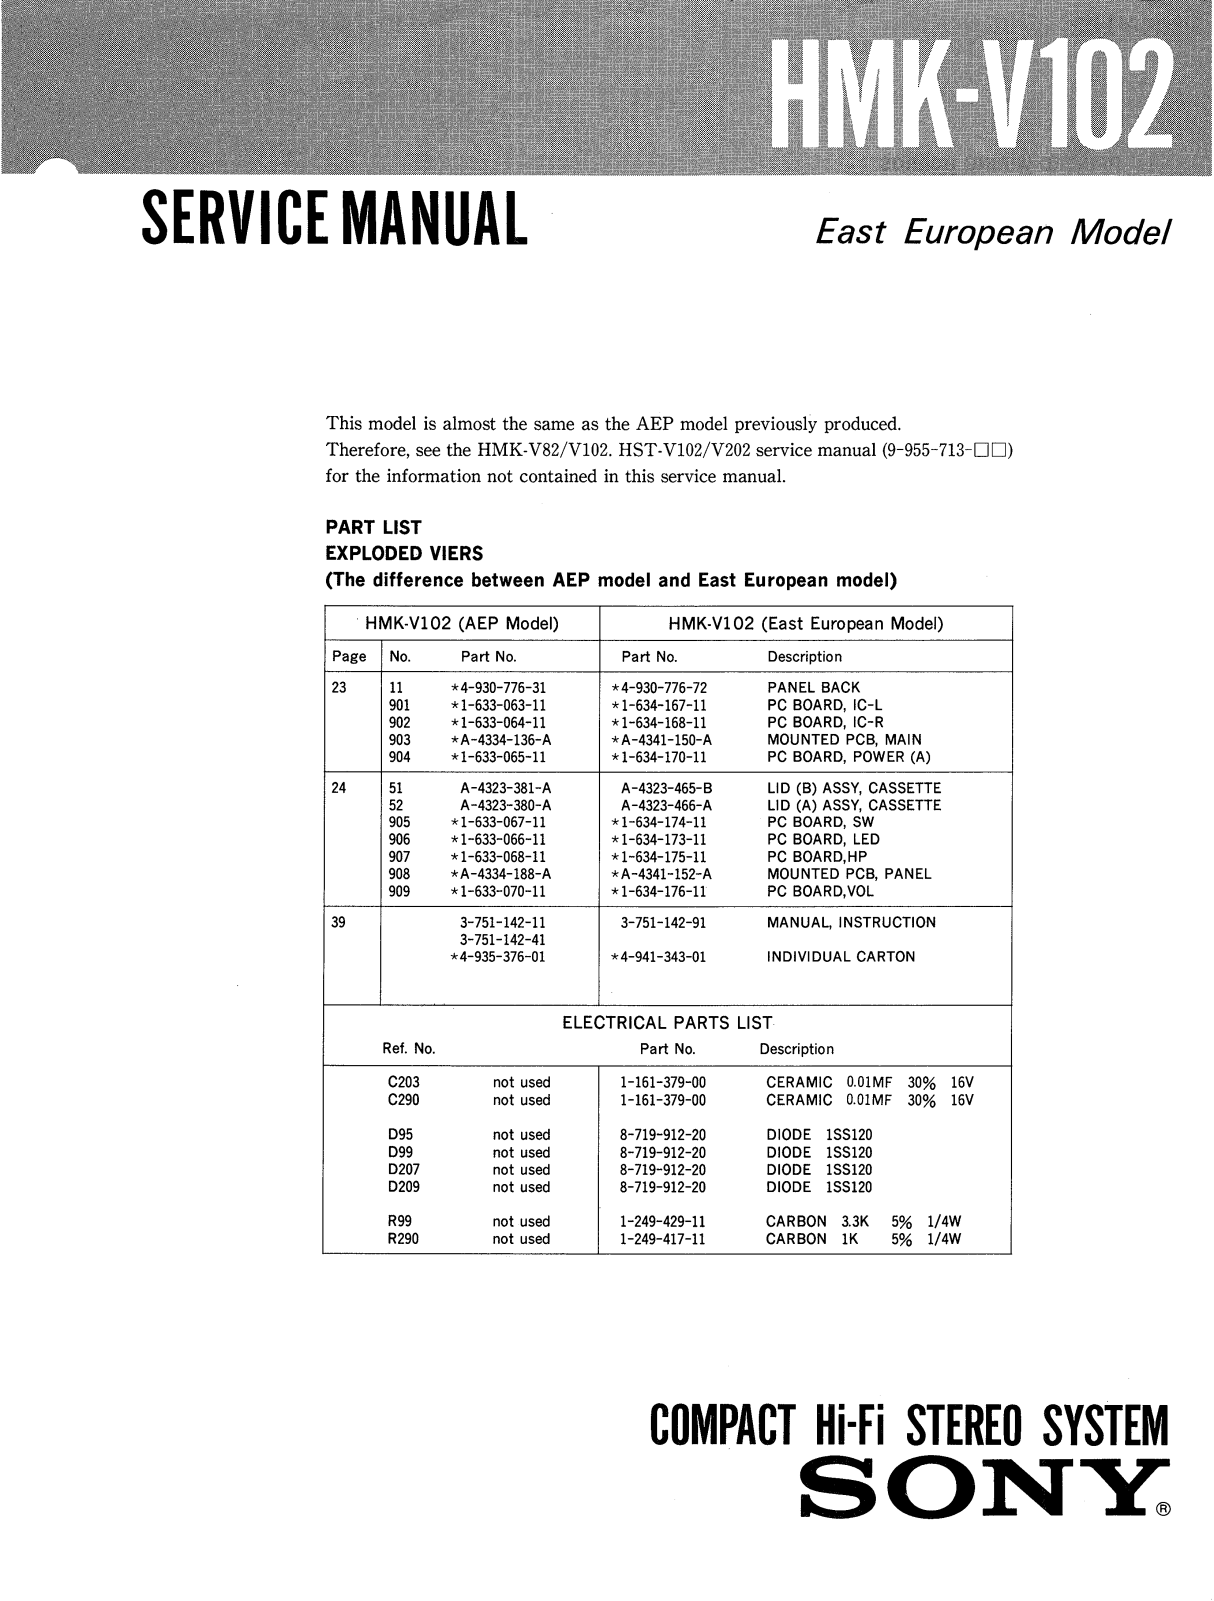 Sony HMKV-102 Service manual